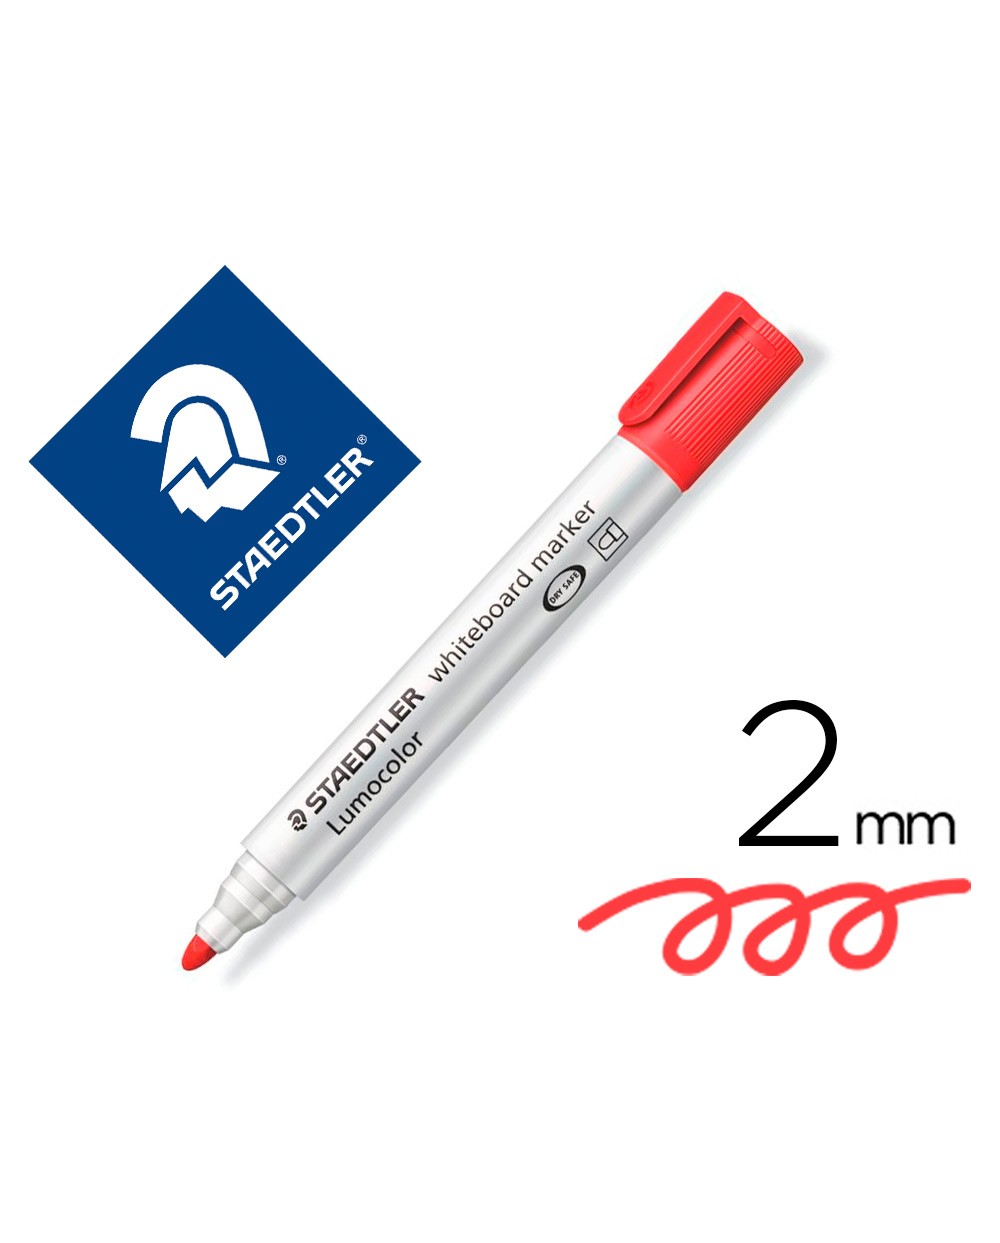 Rotulador staedtler lumocolor 351 para pizarra blanca punta redonda 2 mm recargable color rojo